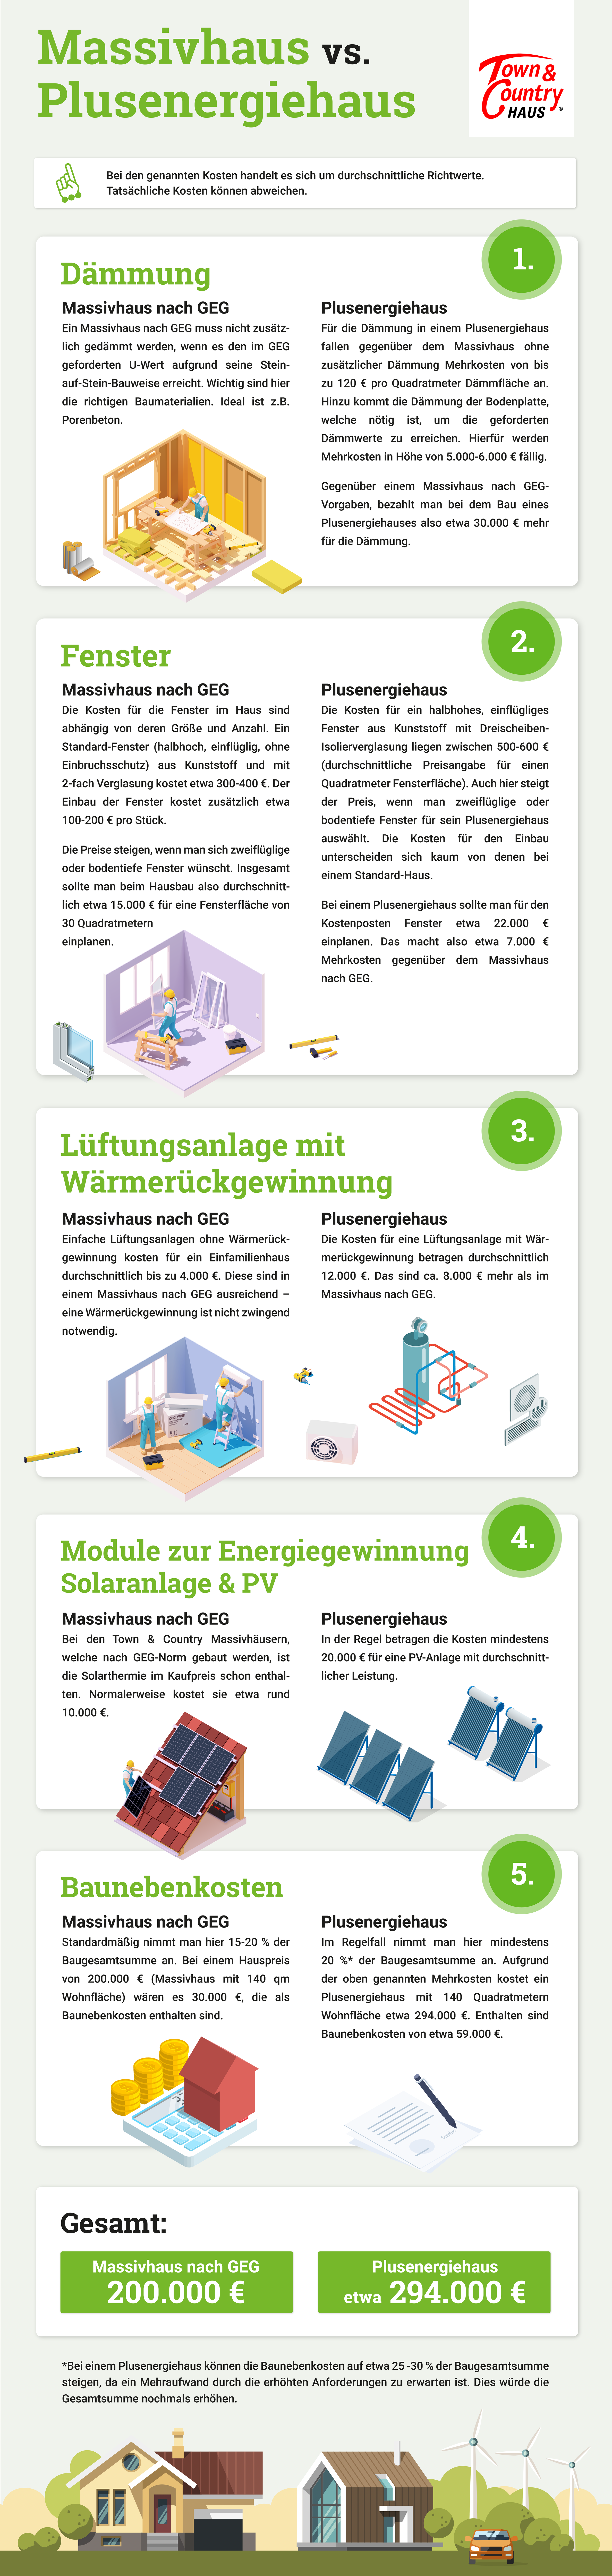 Infografik Massivhaus vs. Plusenergiehaus